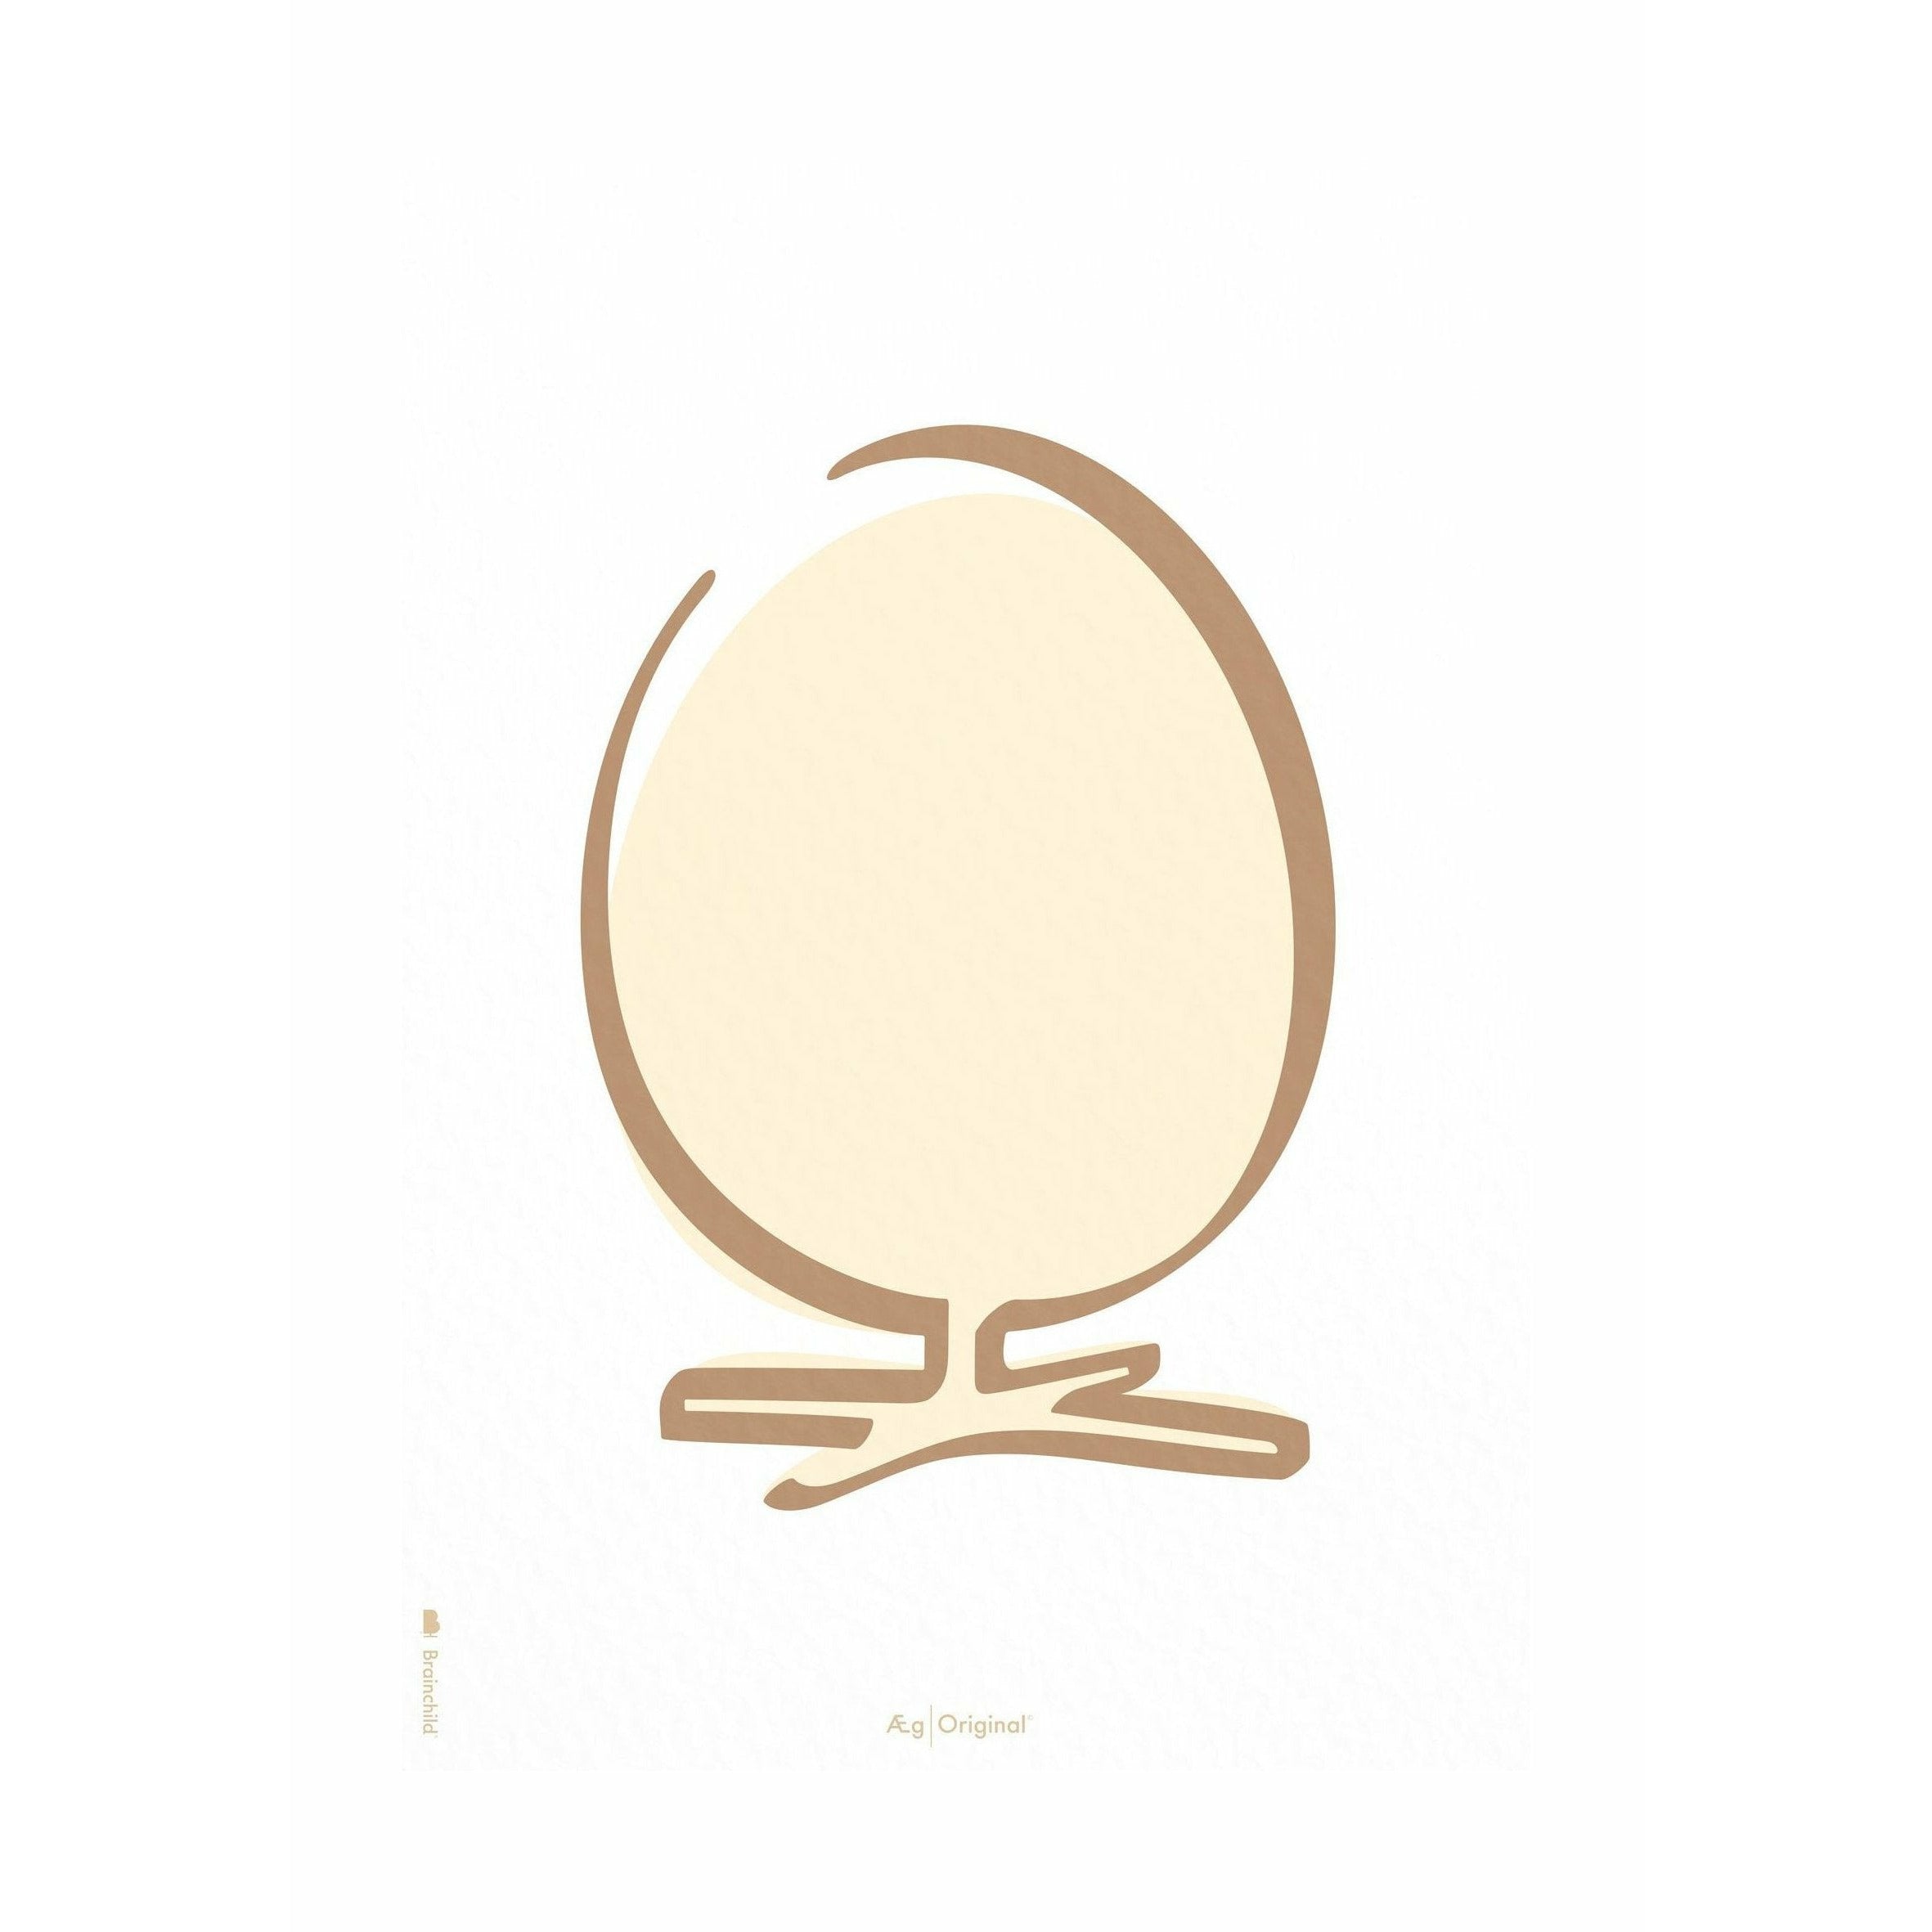 Poster della linea di uova di prima cornice A5, sfondo bianco